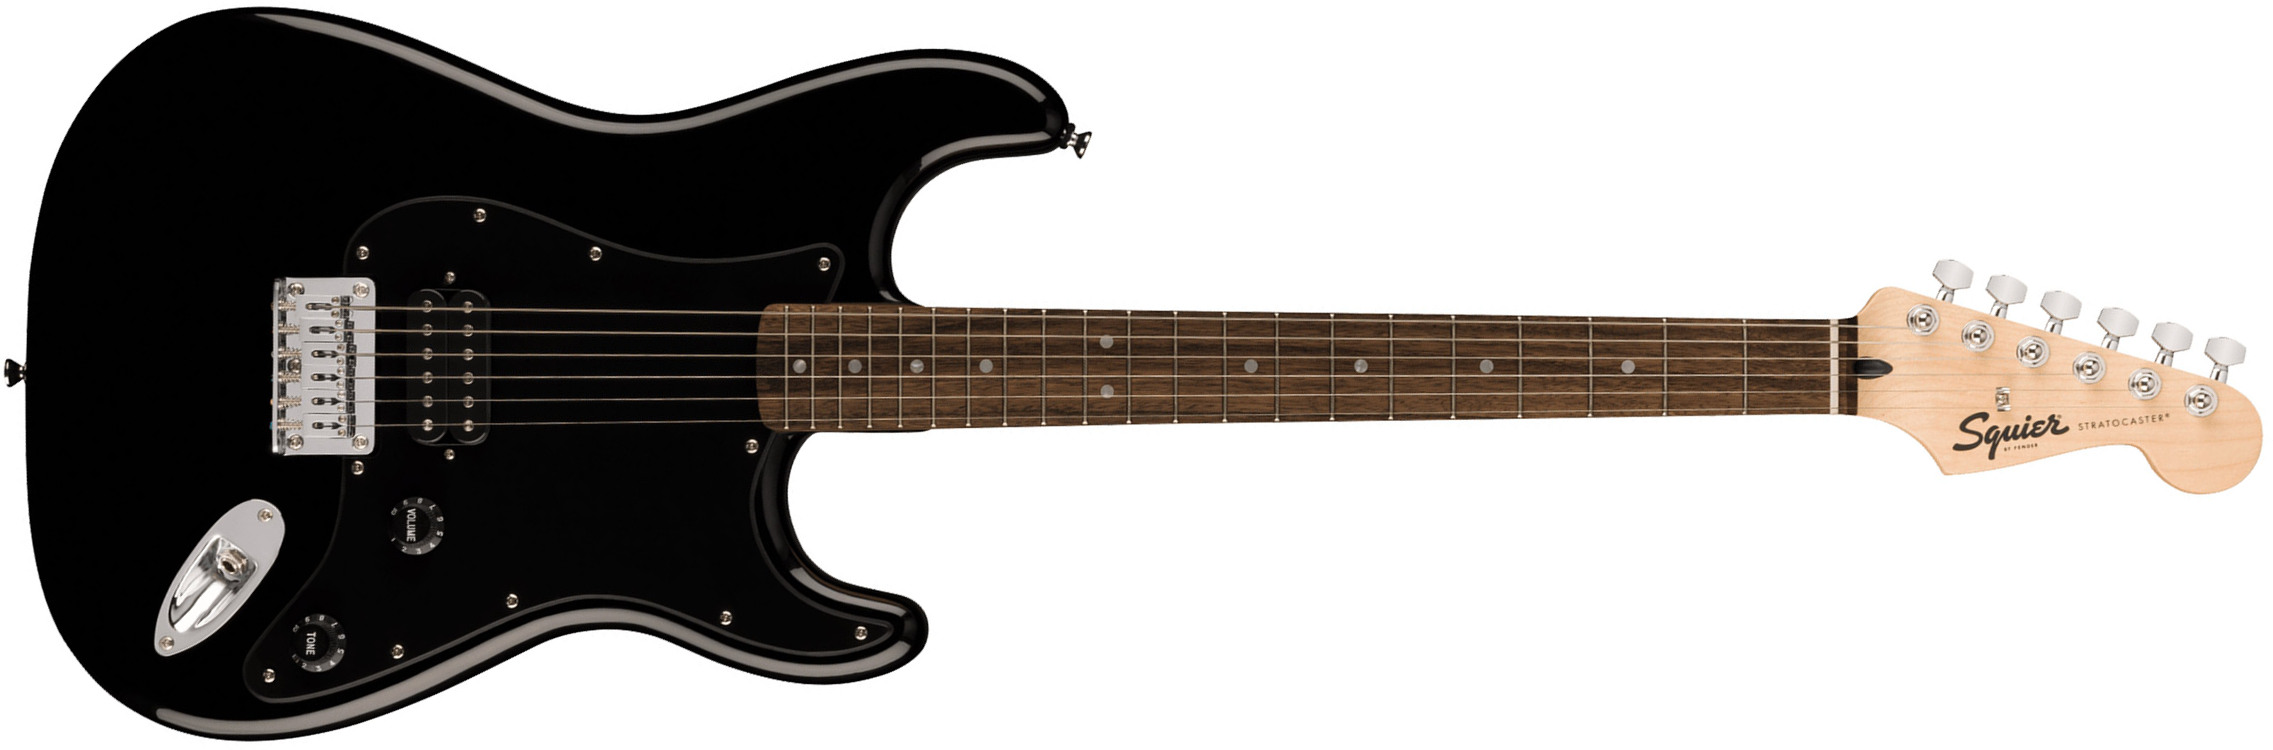 Squier Strat Sonic Hardtail H Ht Lau - Black - Str shape electric guitar - Main picture